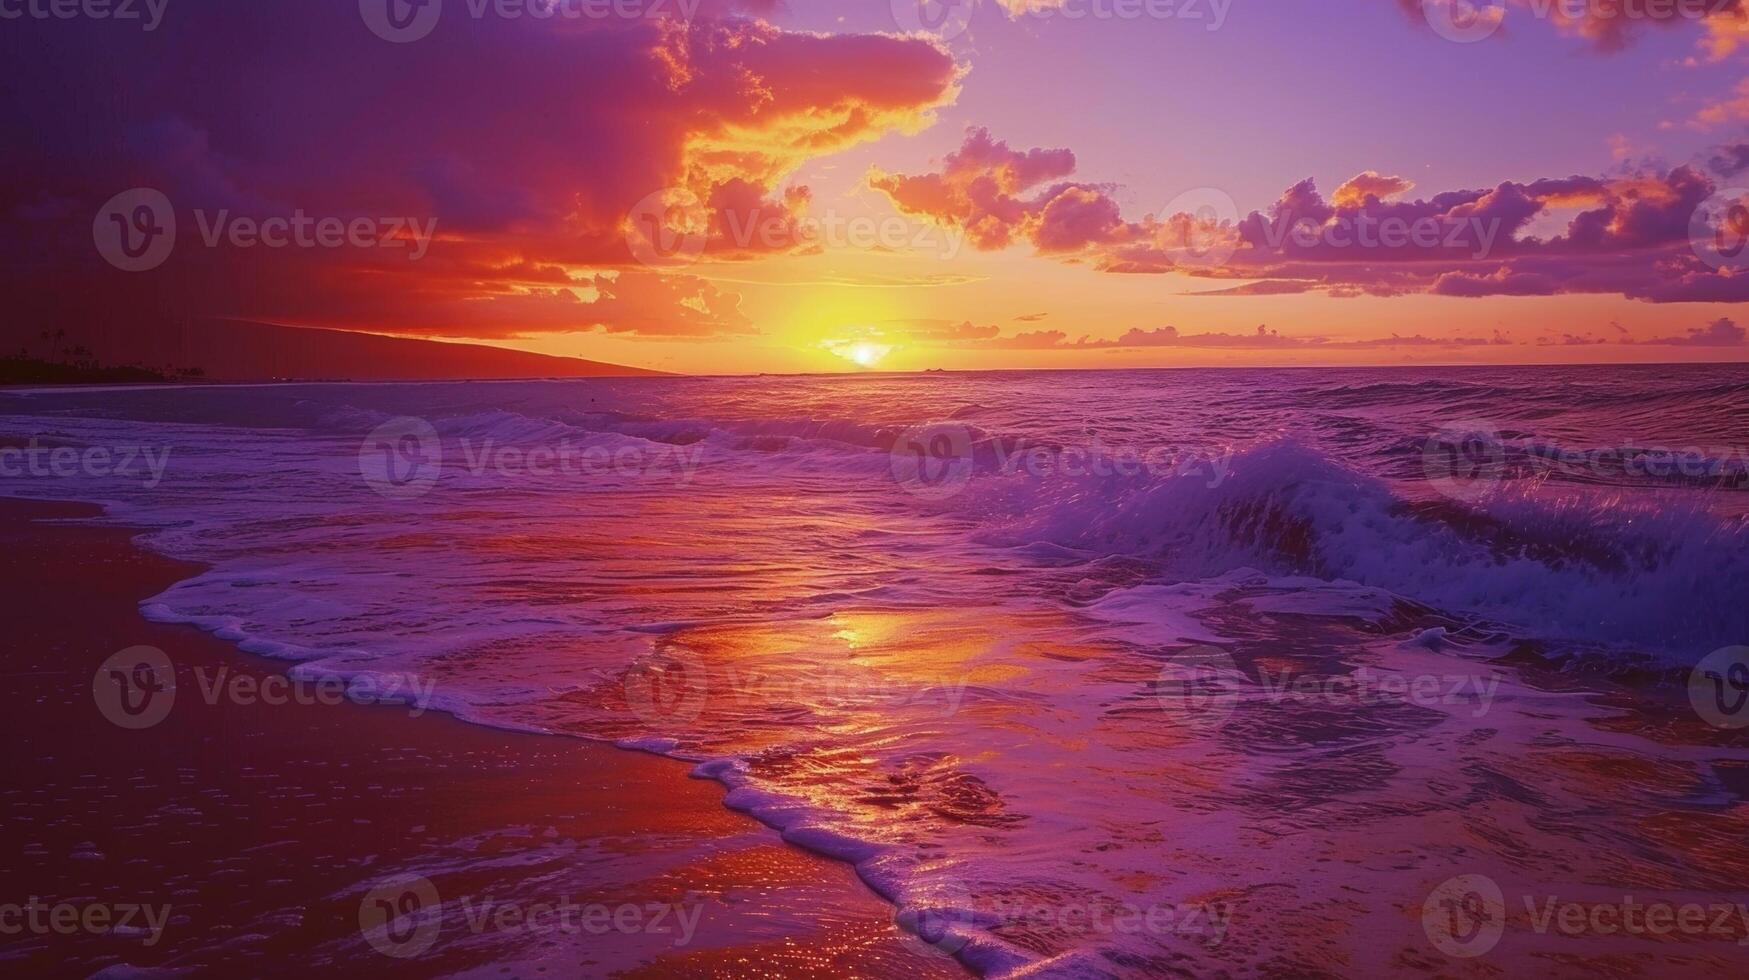 en fredlig strand scen med de ljud av kraschar vågor och ett orange och lila himmel inviterar meditation och mocktails på några tid av dag foto